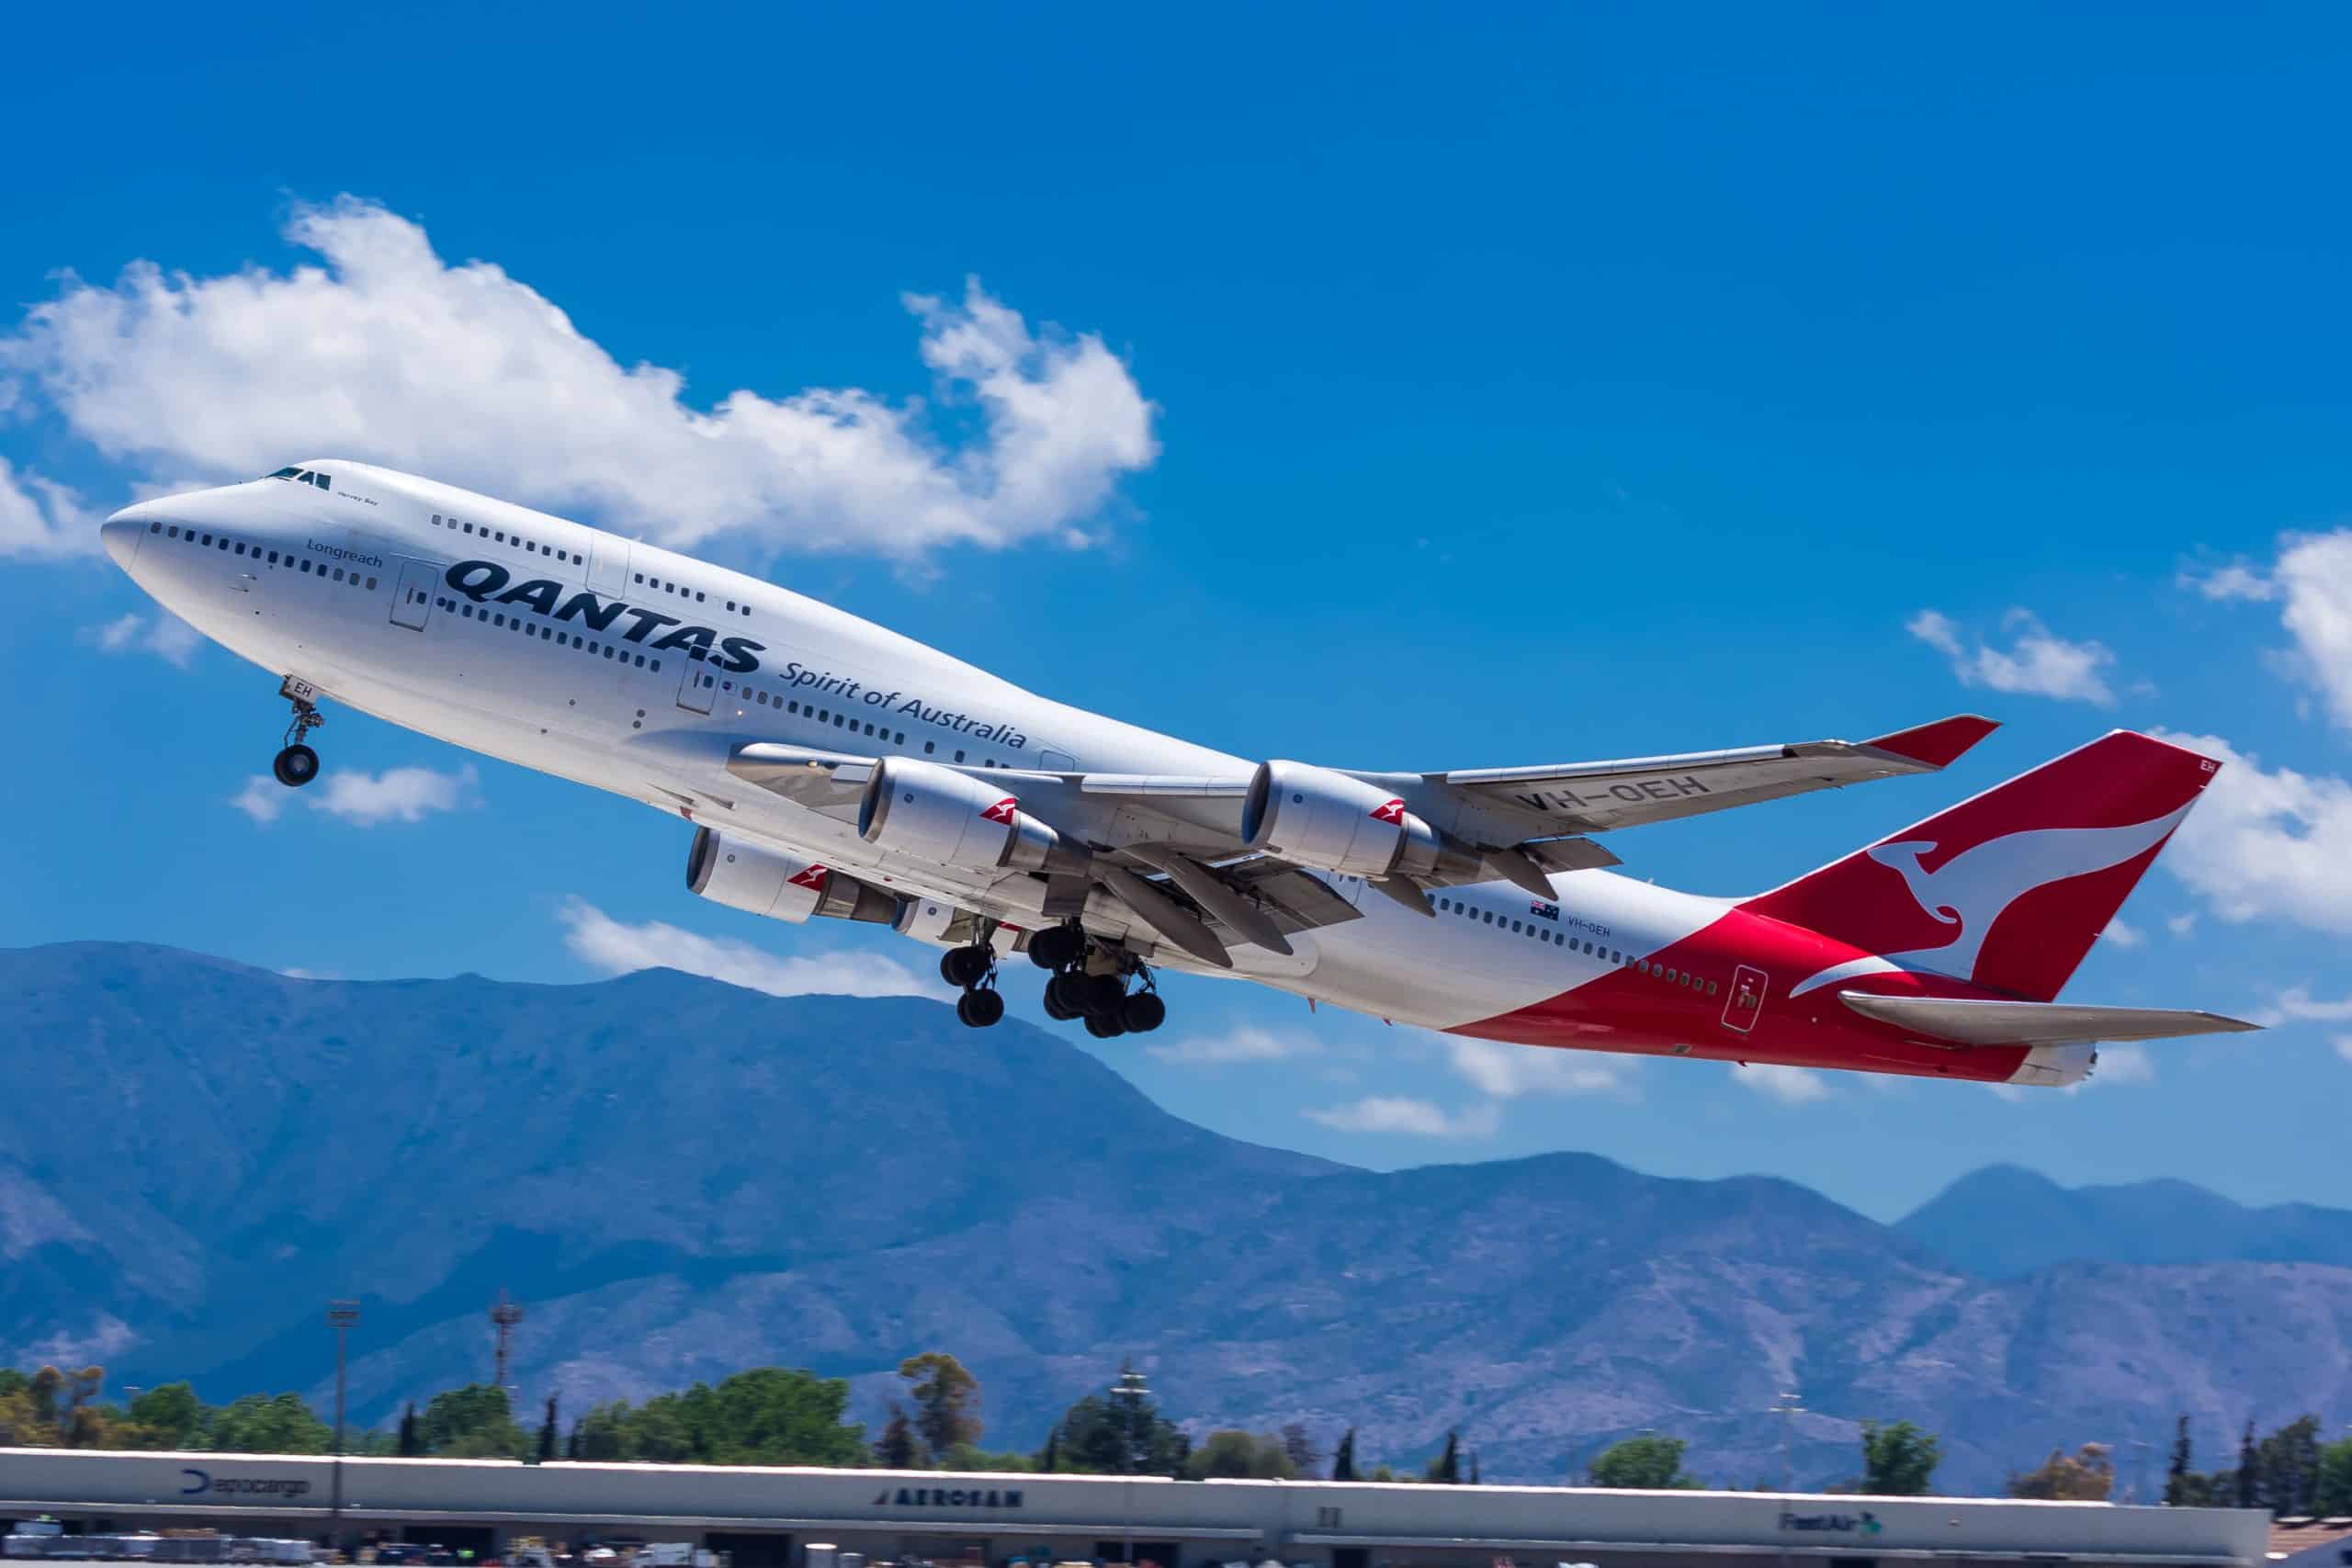 Flugzeug der australischen Airline Qantas